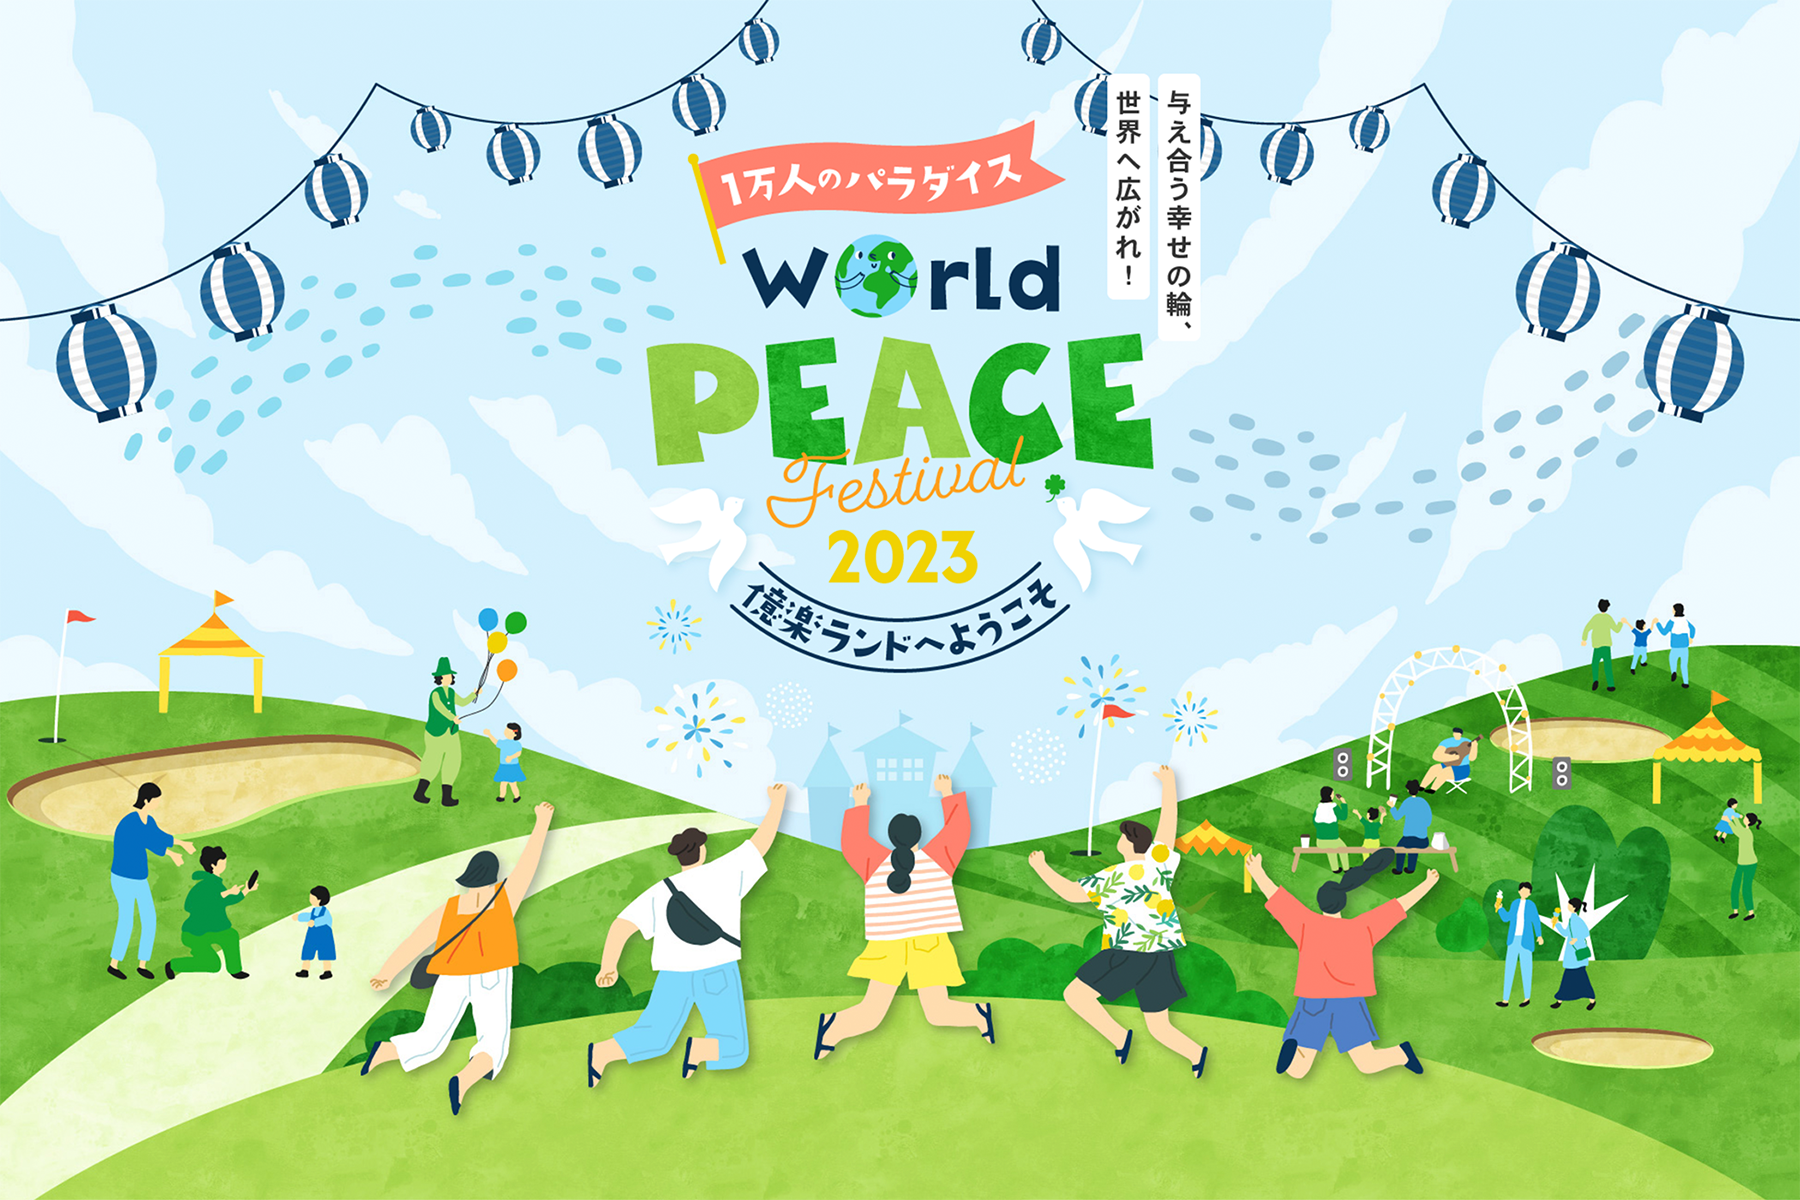 923ɁwWorld Peace Festival 2023xJÁBەaf[ɂȂ݁AåCxg(Q)